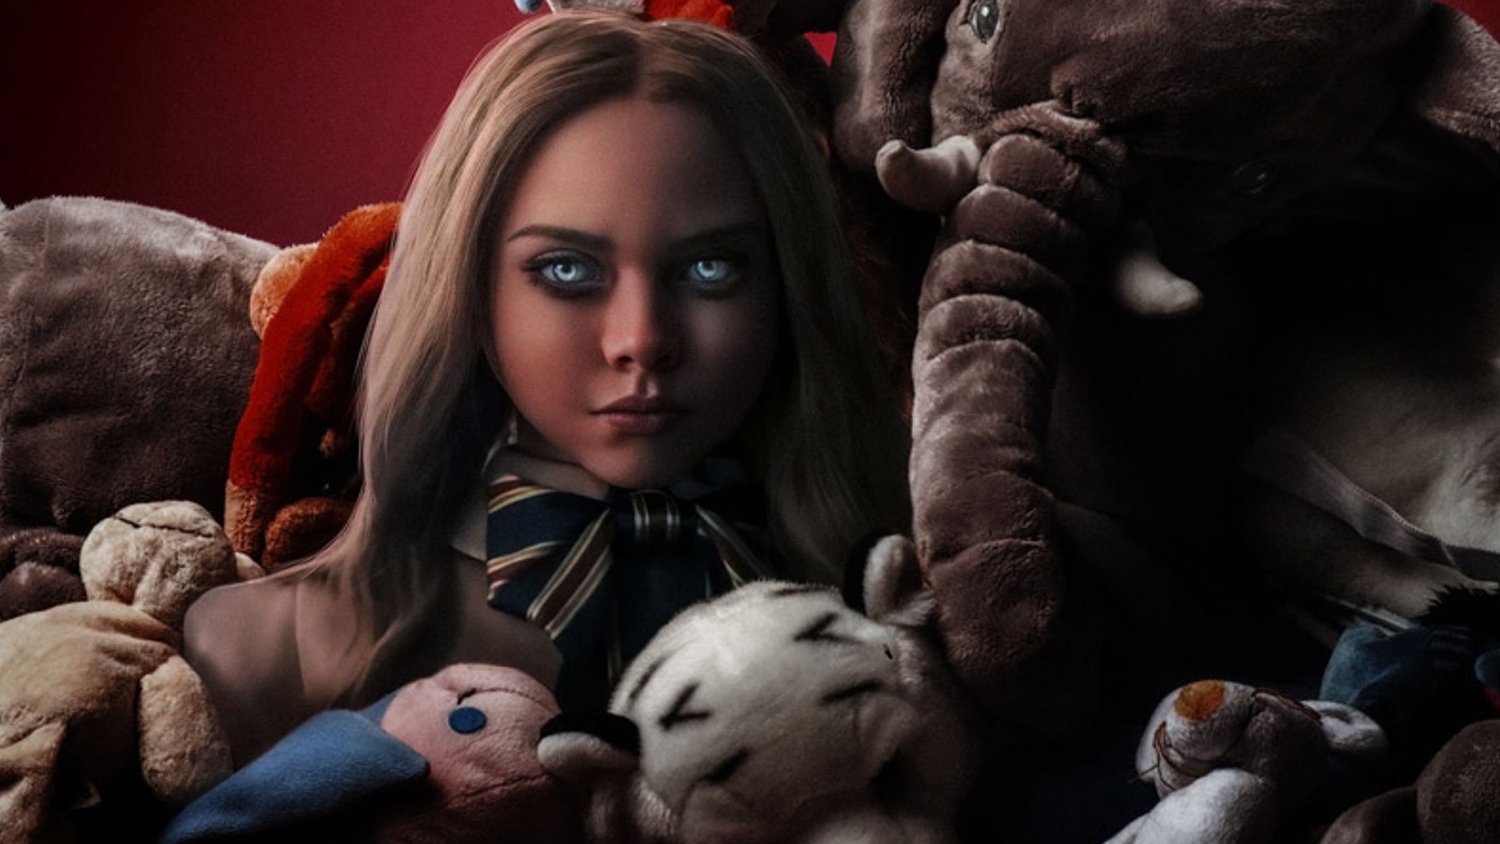 La nouvelle bande-annonce promotionnelle pour M3GAN explore la chair de poule ludique de la poupée Killer AI